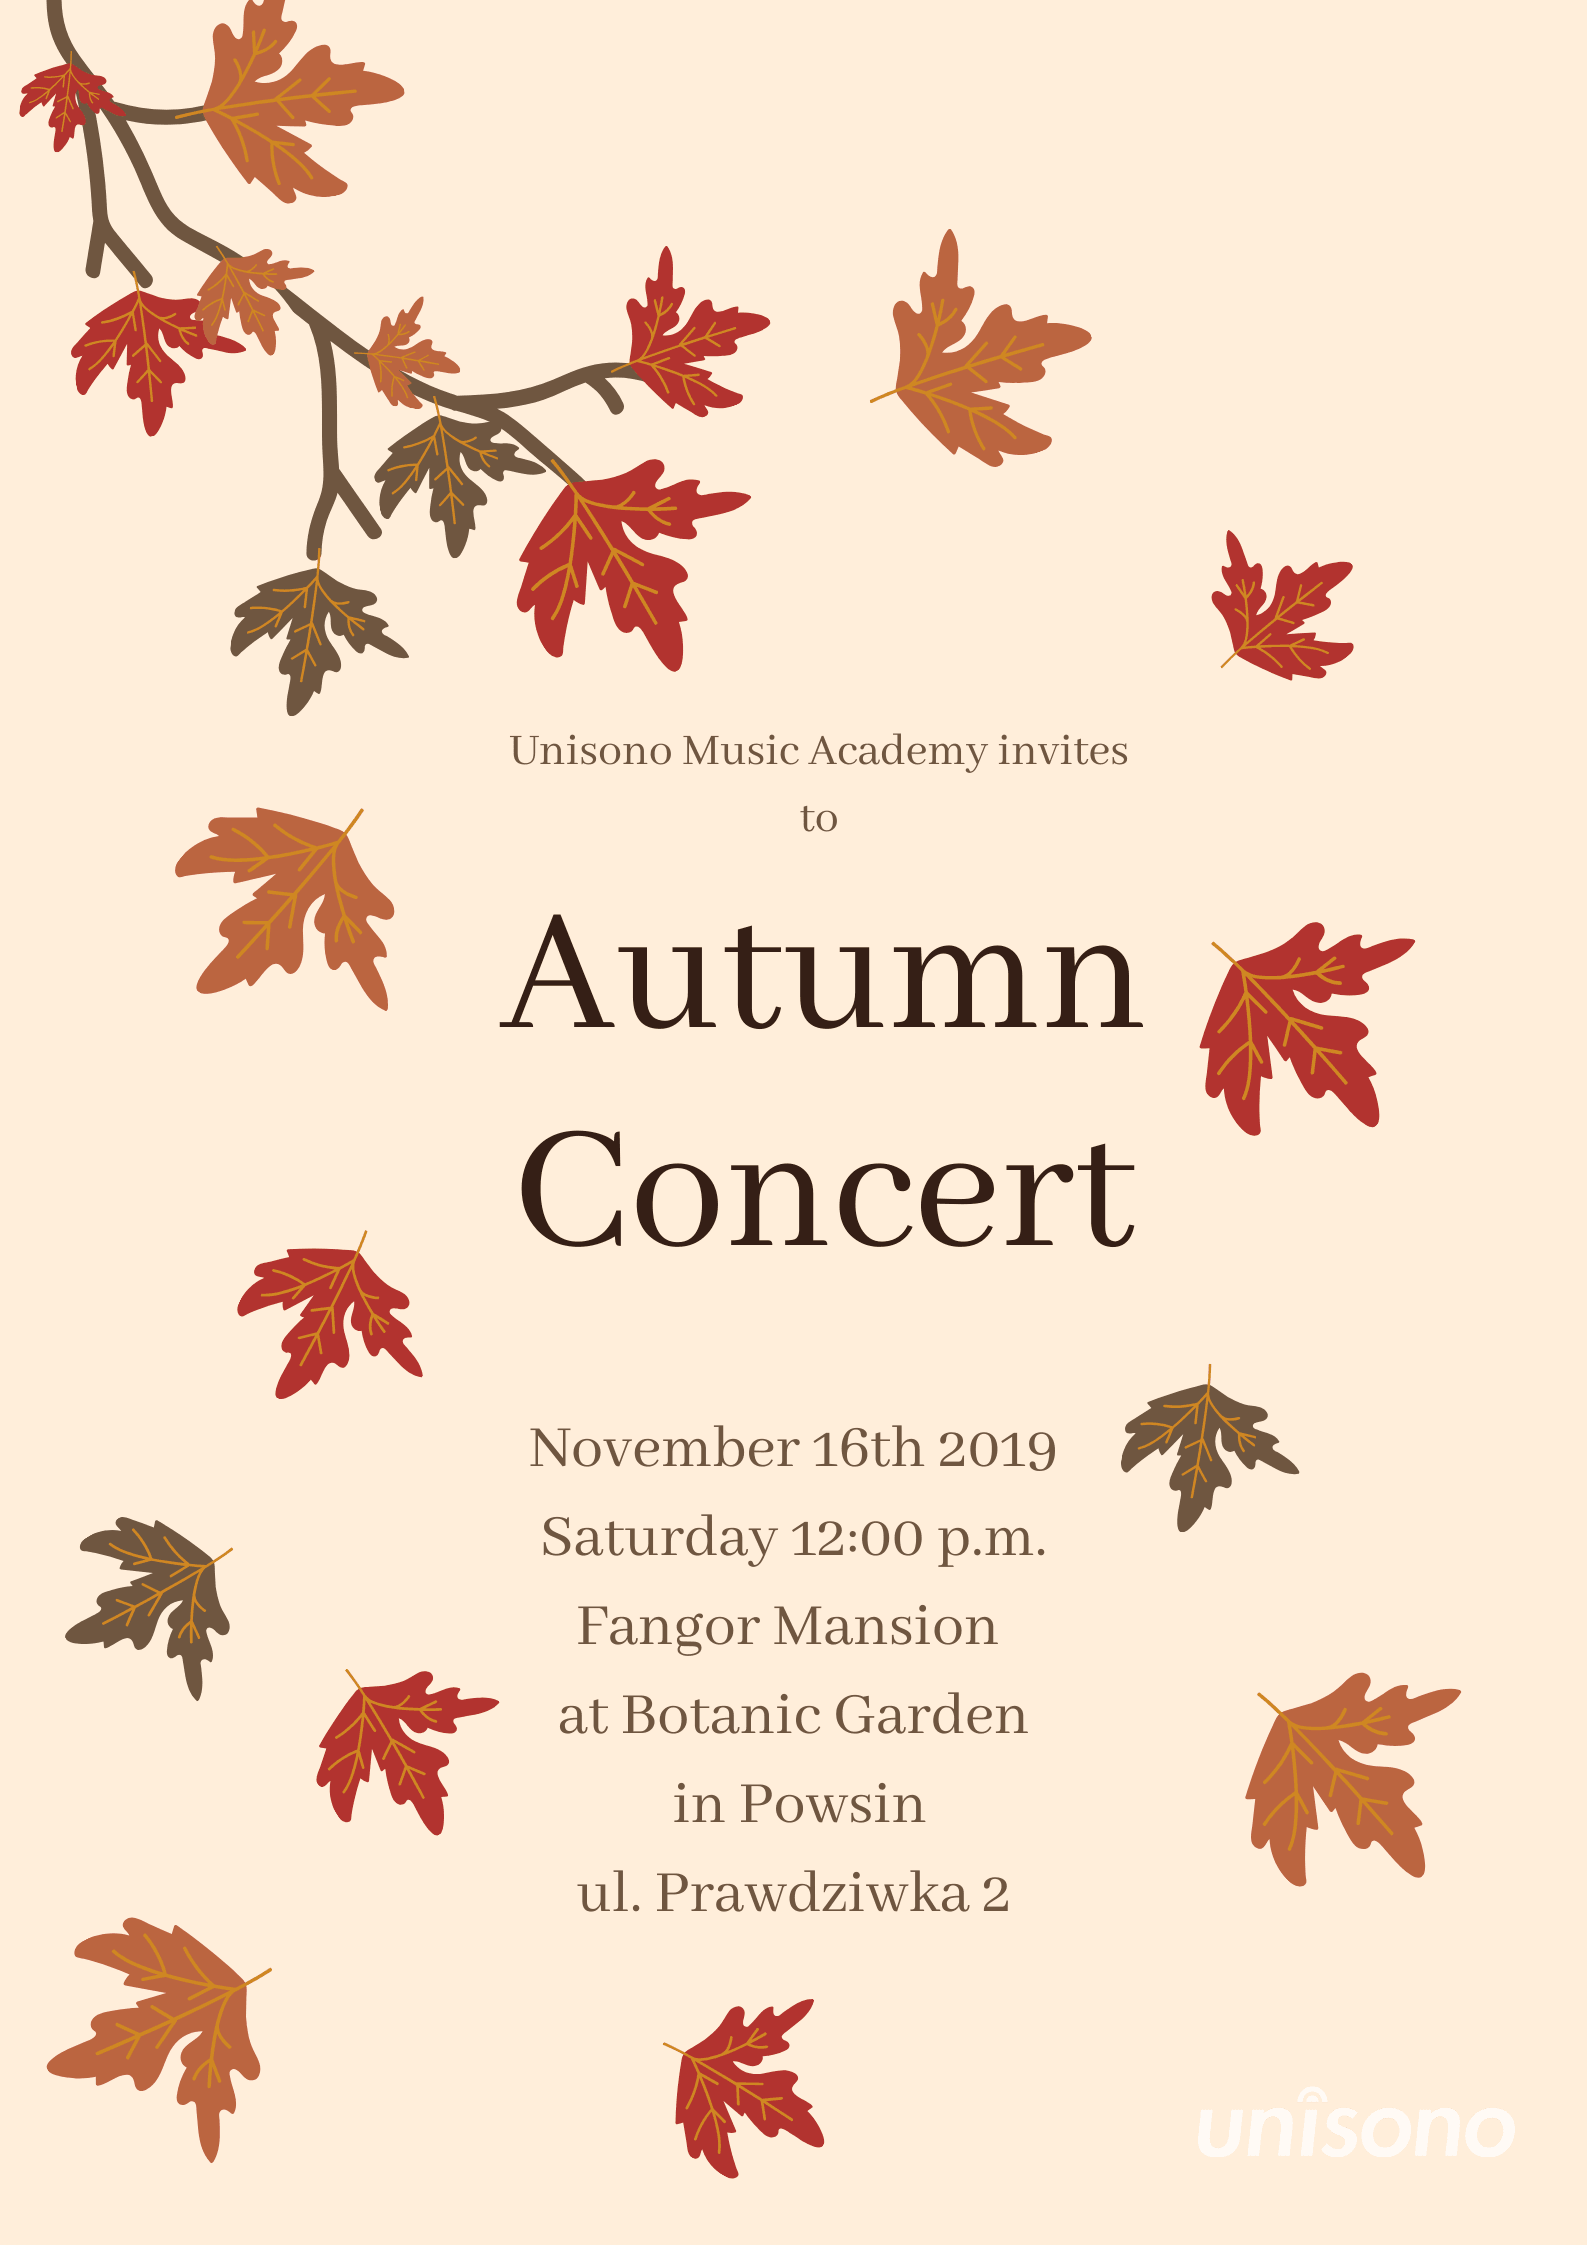 Autumn Concert 2019 Invitation